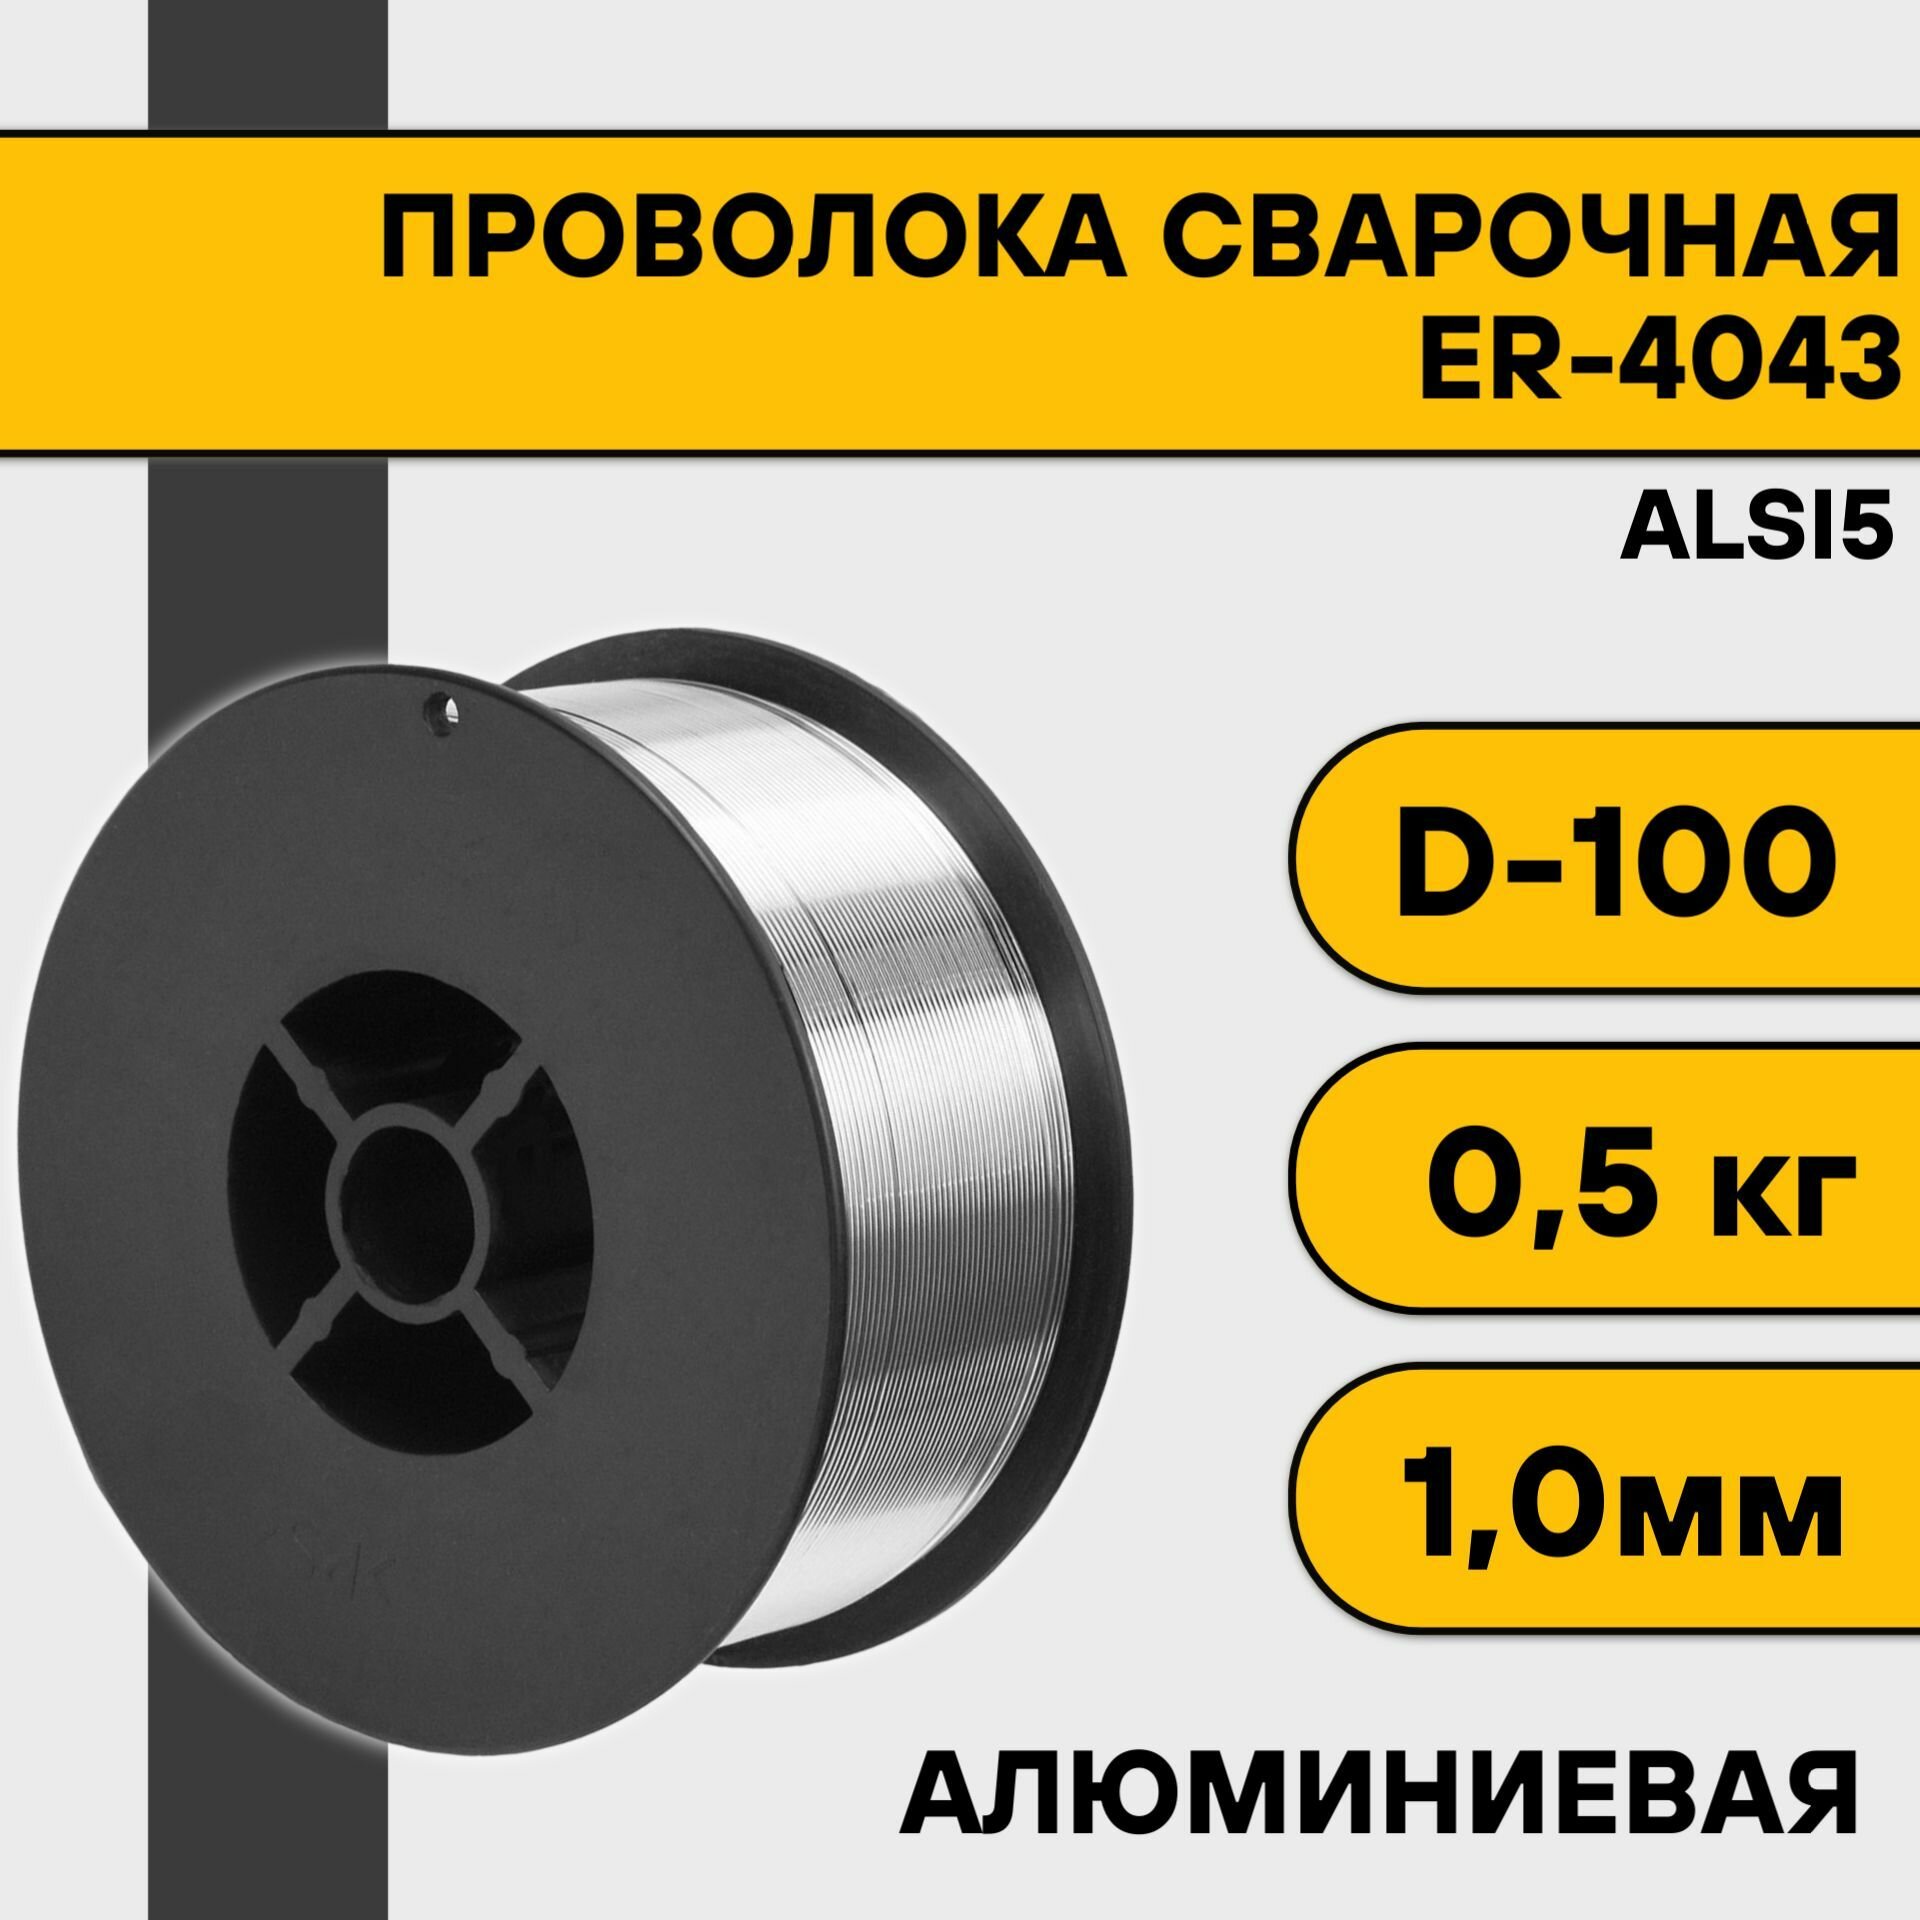 Сварочная проволока для алюминия ER-4043 (Alsi5) ф 1,0 мм (0,5 кг) D100